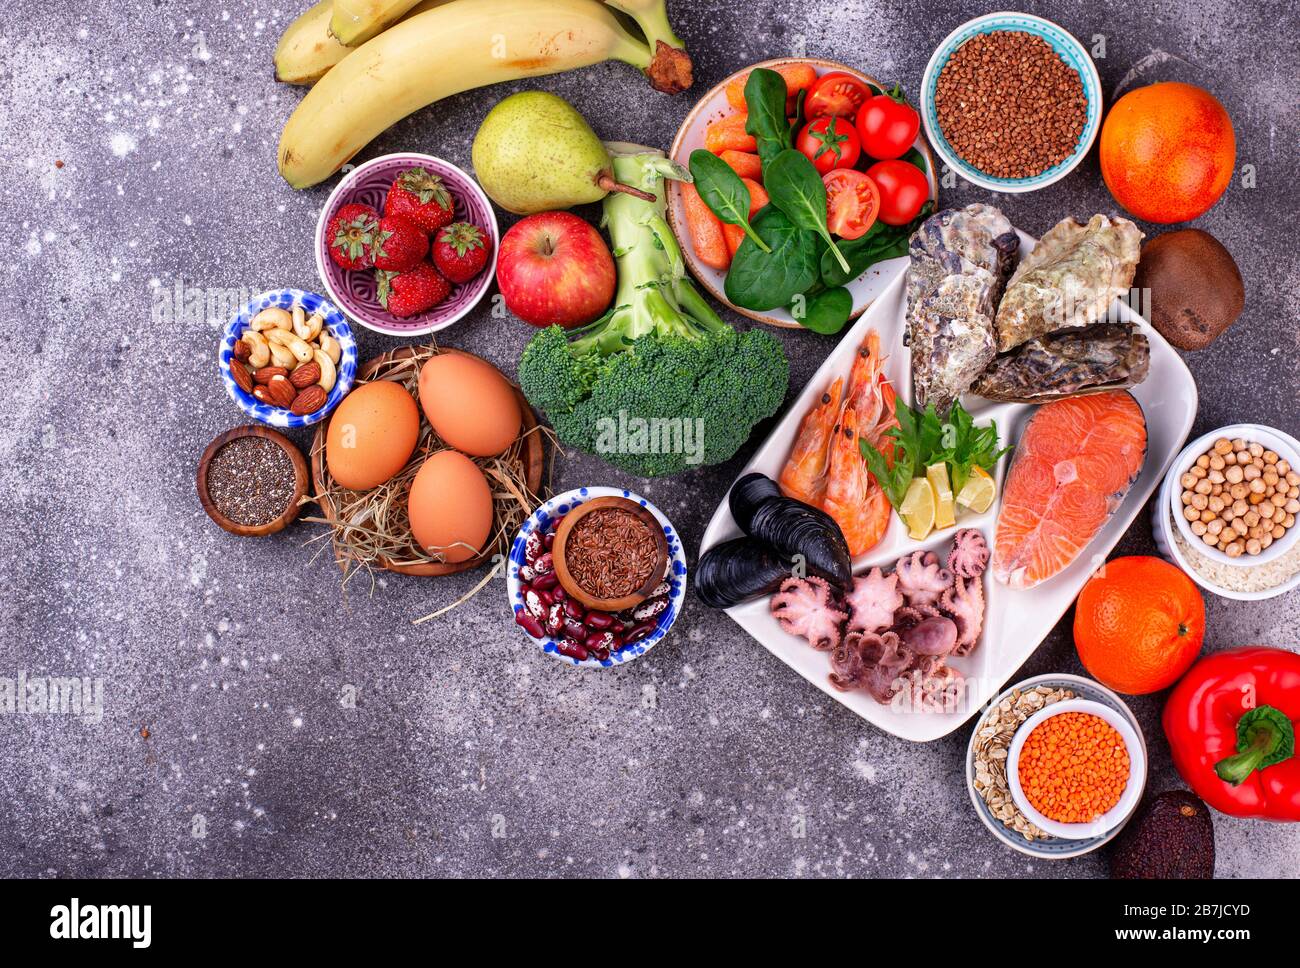 Pescetarische Ernährung mit Meeresfrüchten, Obst und Gemüse Stockfoto